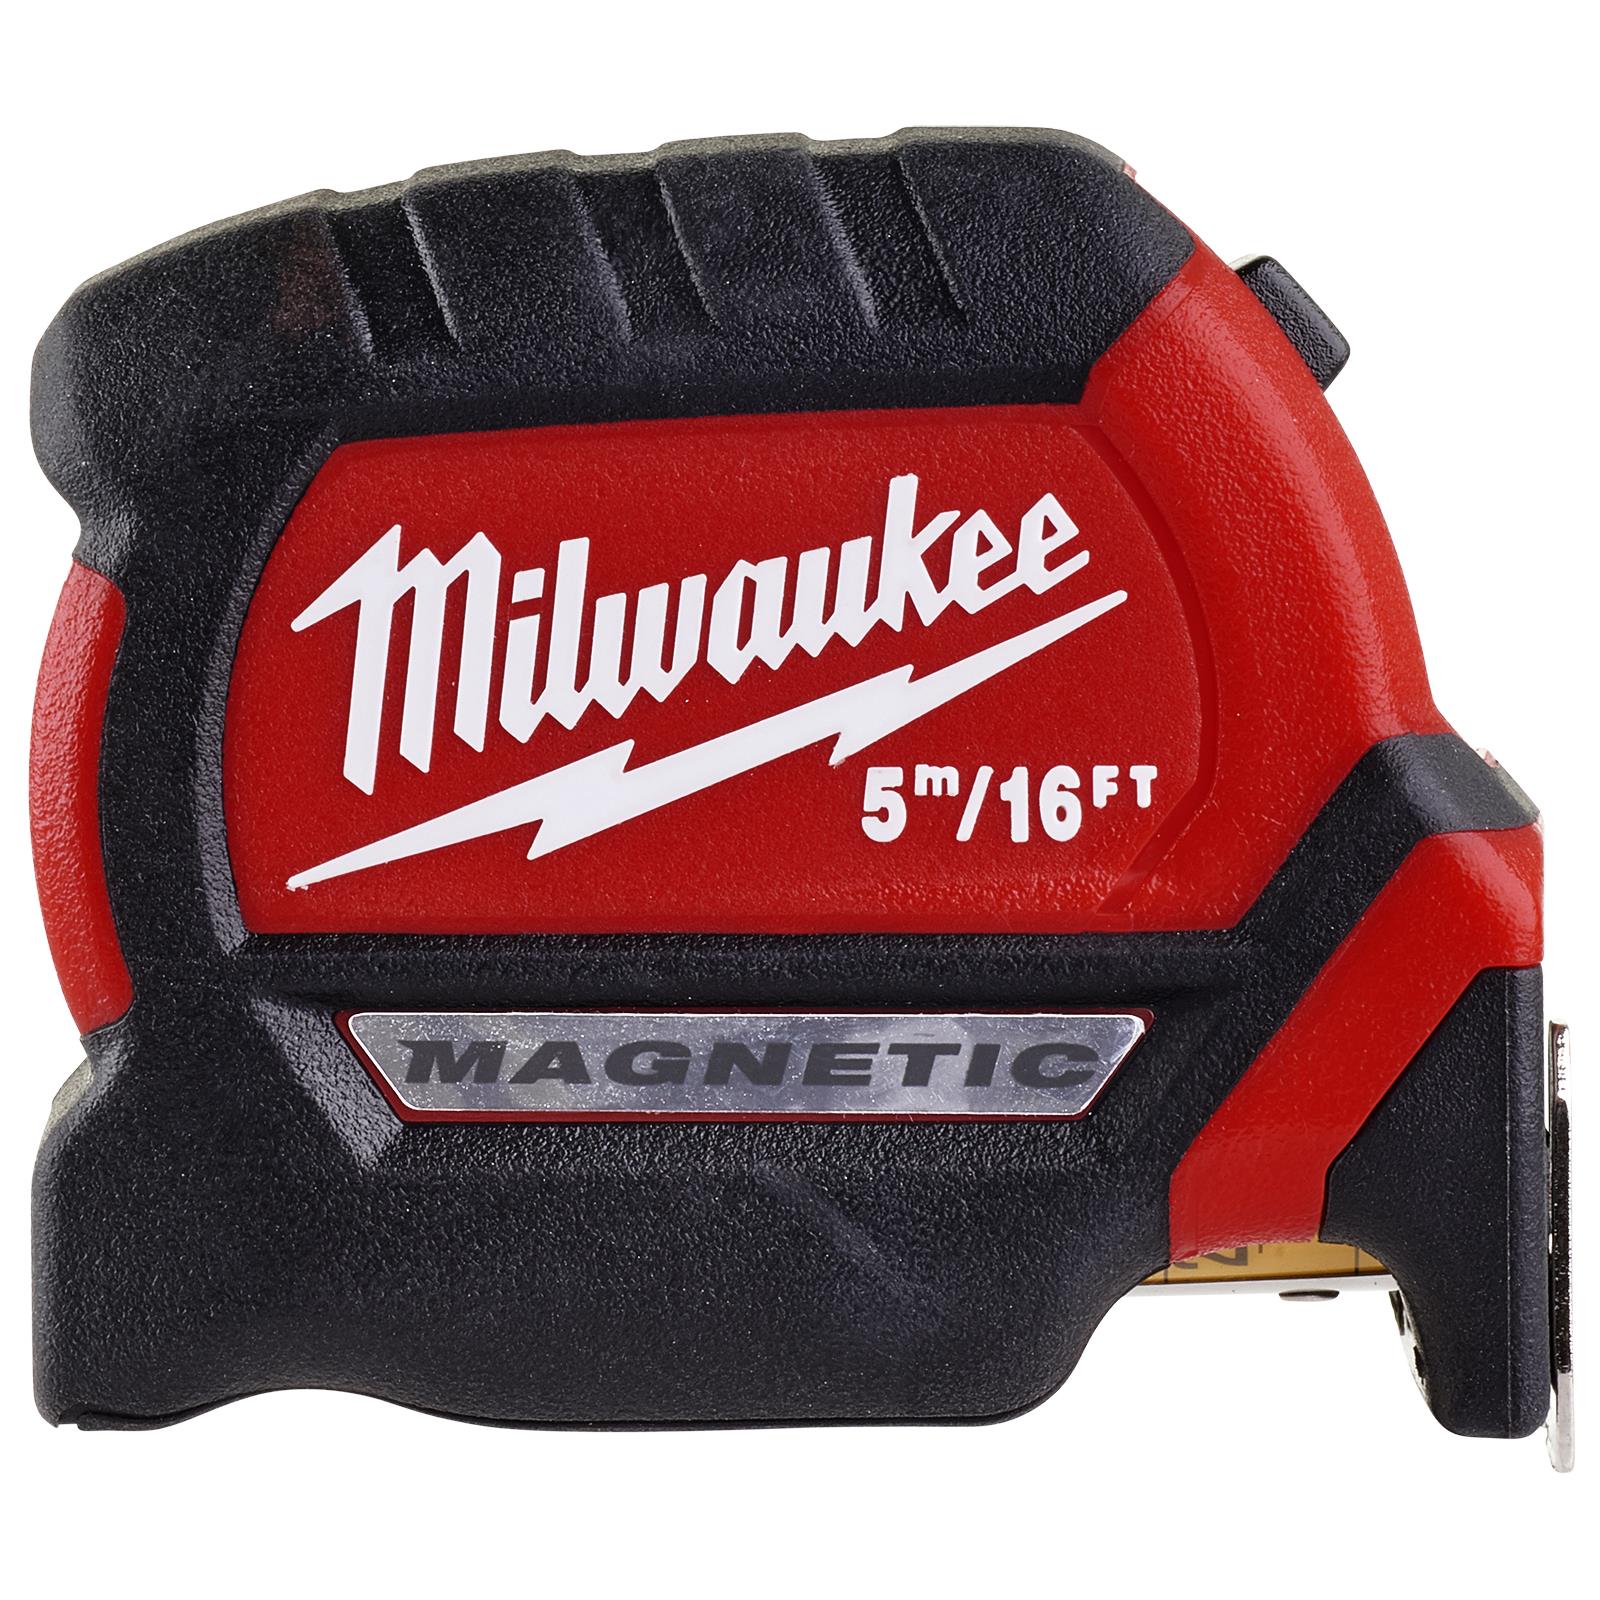 Milwaukee Magnetic Tape Measure Gen III 5m 16ft Metric Imperial 27mm Blade Width